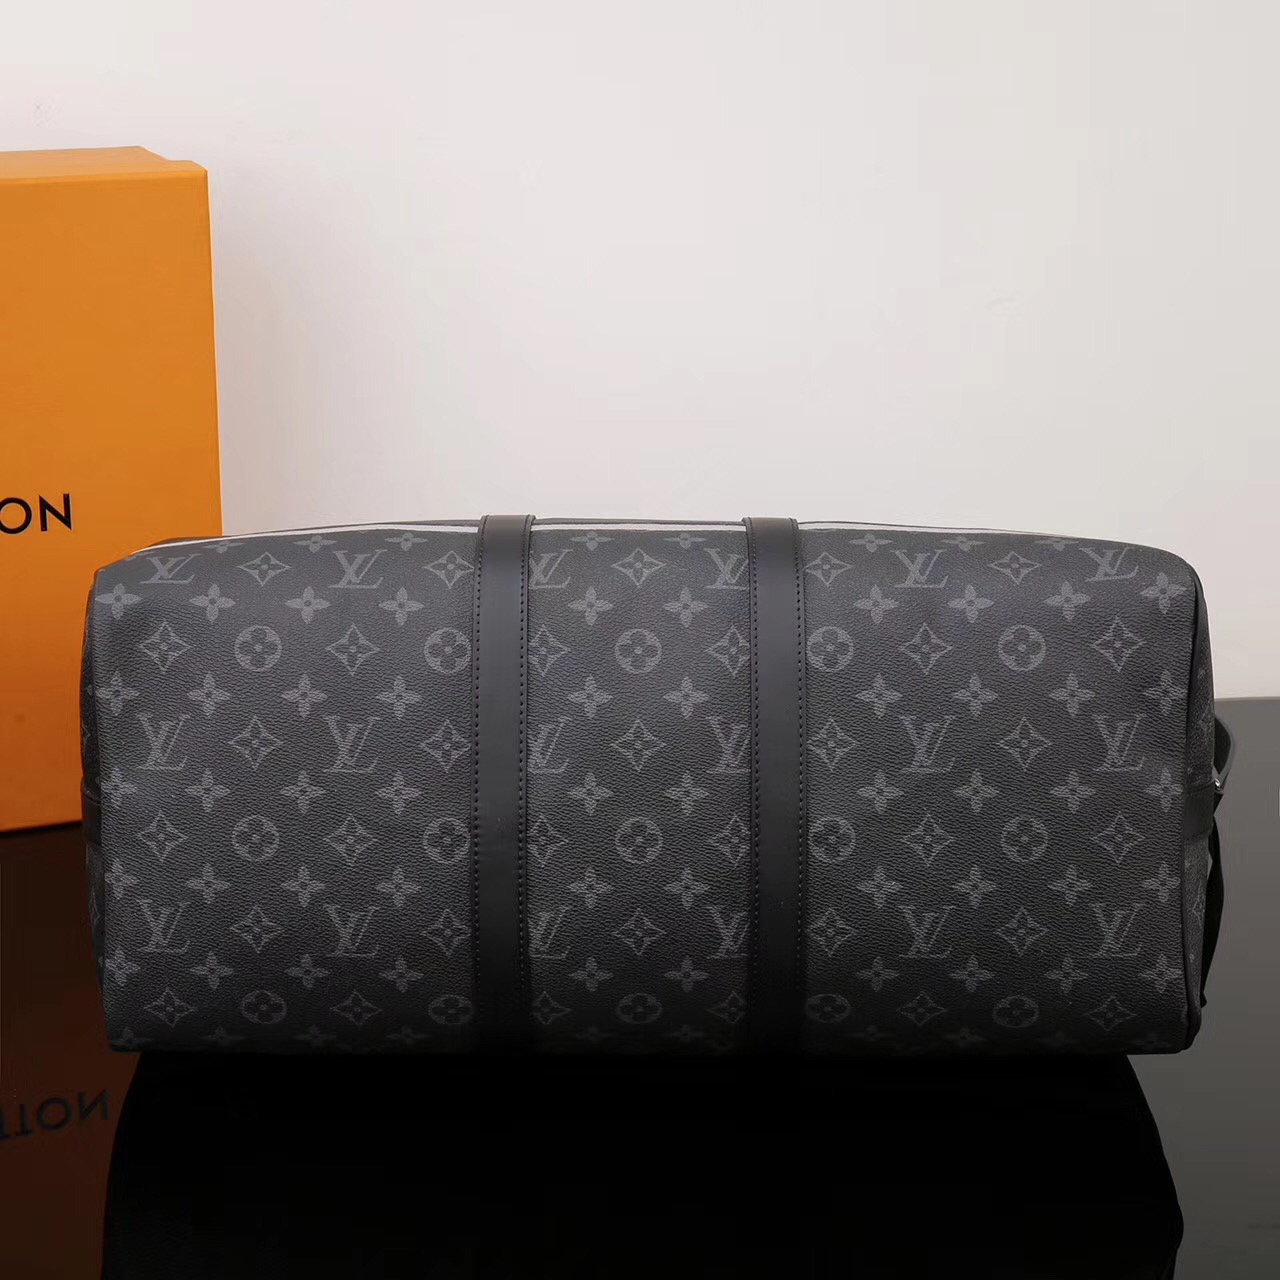 Men LV Louis Vuitton Keepall 45 Handbags Travelling M43413 Monogram bags Black [LV1192] - $299 ...